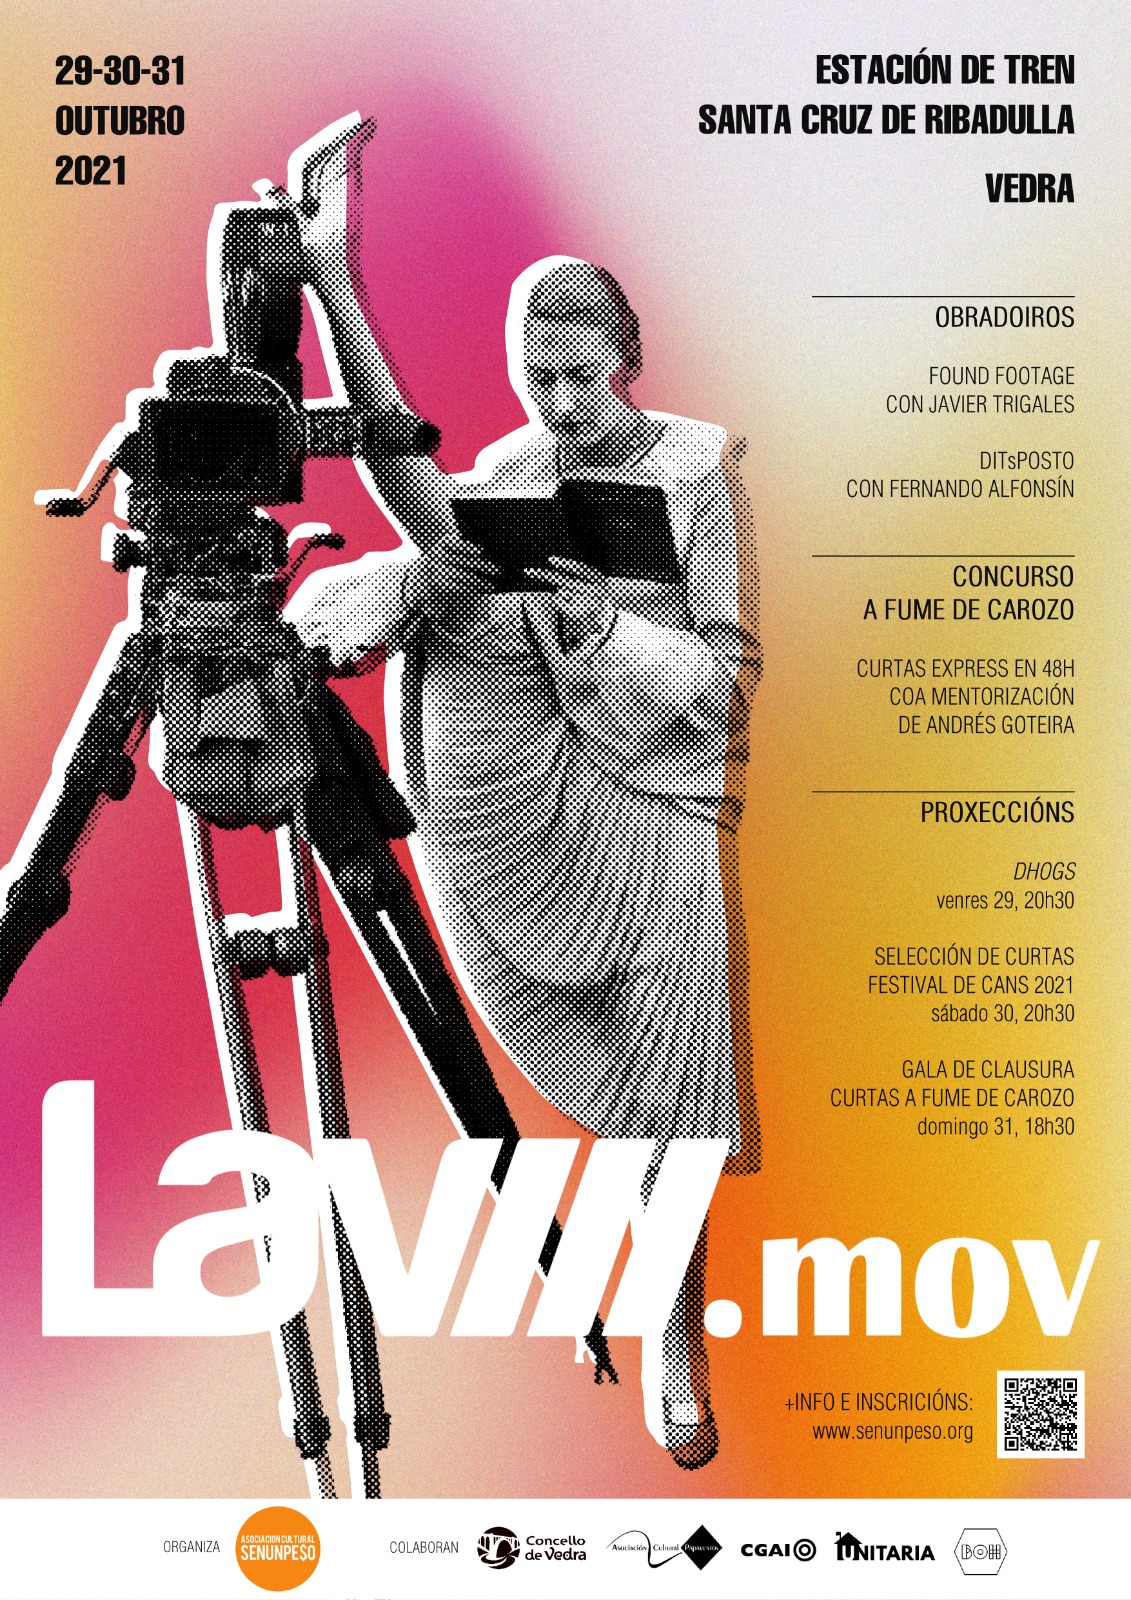 Vedra acolle esta fin de semana unha nova edición do LAV.mov, con formación audiovisual, concurso de curtas express e as proxeccións de ‘Dhogs’ e as curtas gañadoras do Festival de Cans